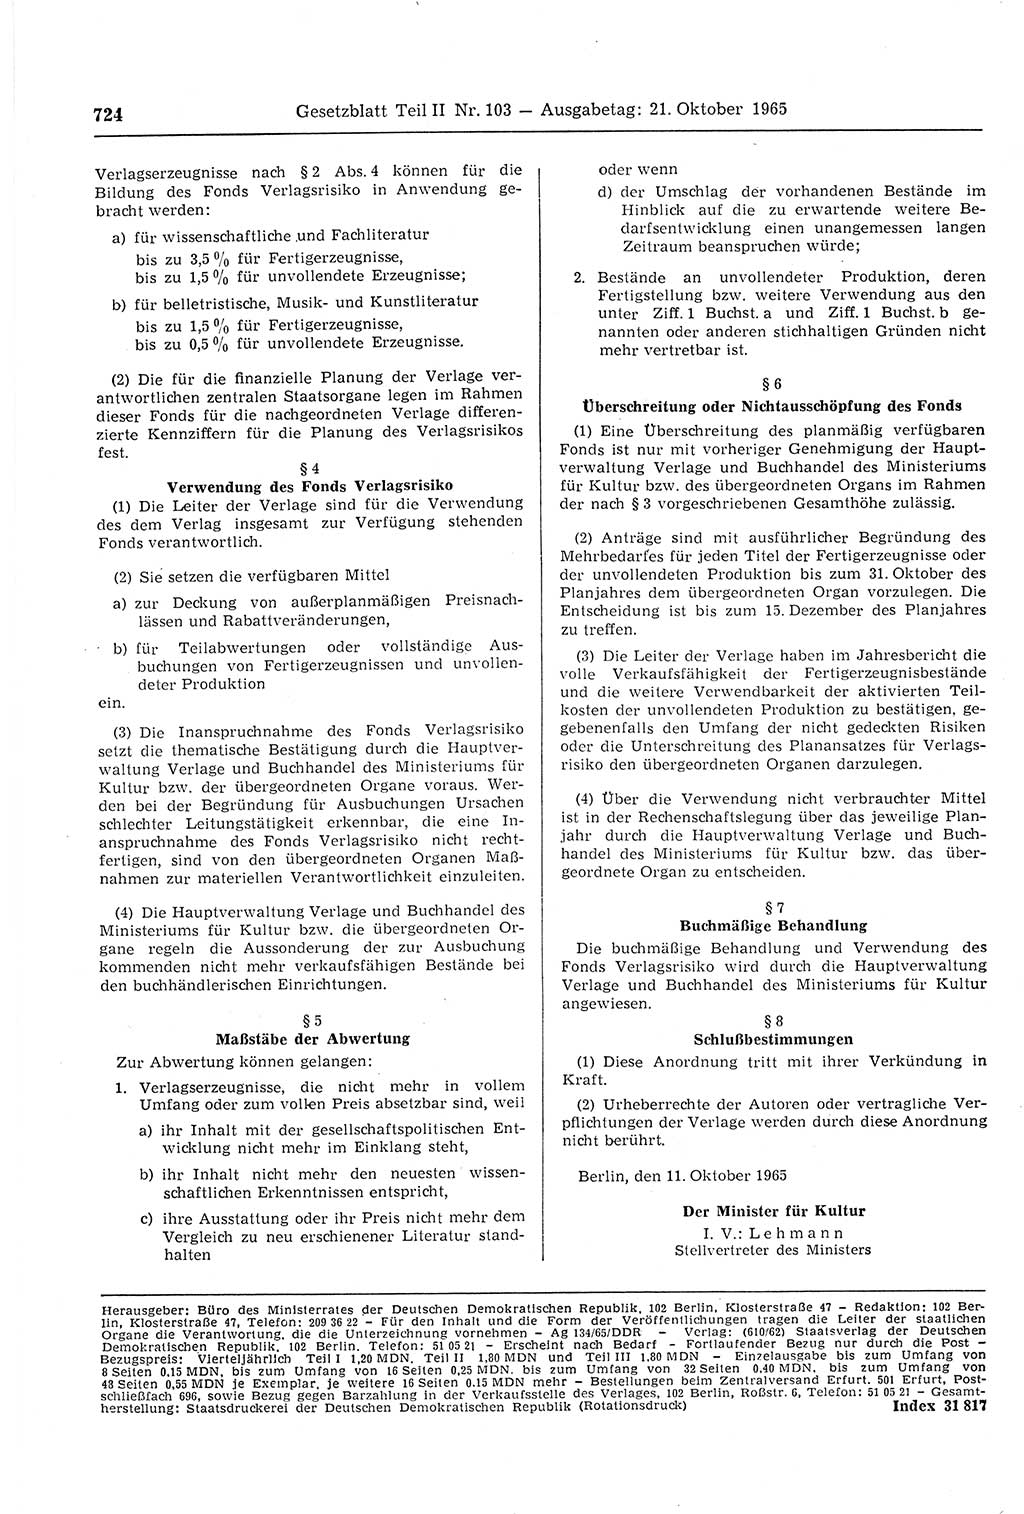 Gesetzblatt (GBl.) der Deutschen Demokratischen Republik (DDR) Teil ⅠⅠ 1965, Seite 724 (GBl. DDR ⅠⅠ 1965, S. 724)